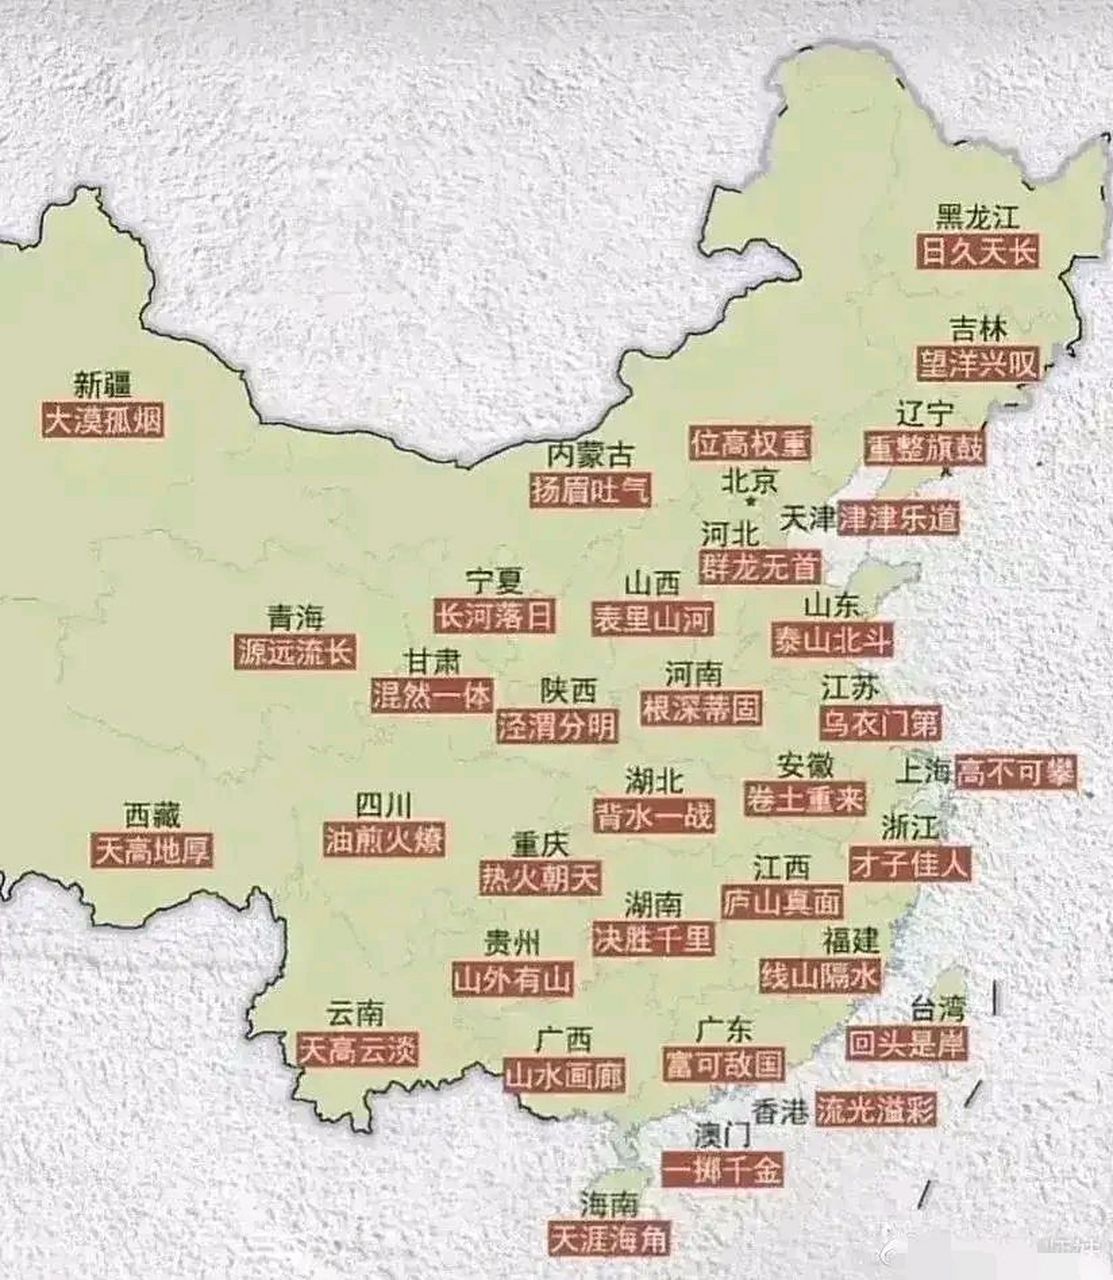 中国省份地图及简称图片